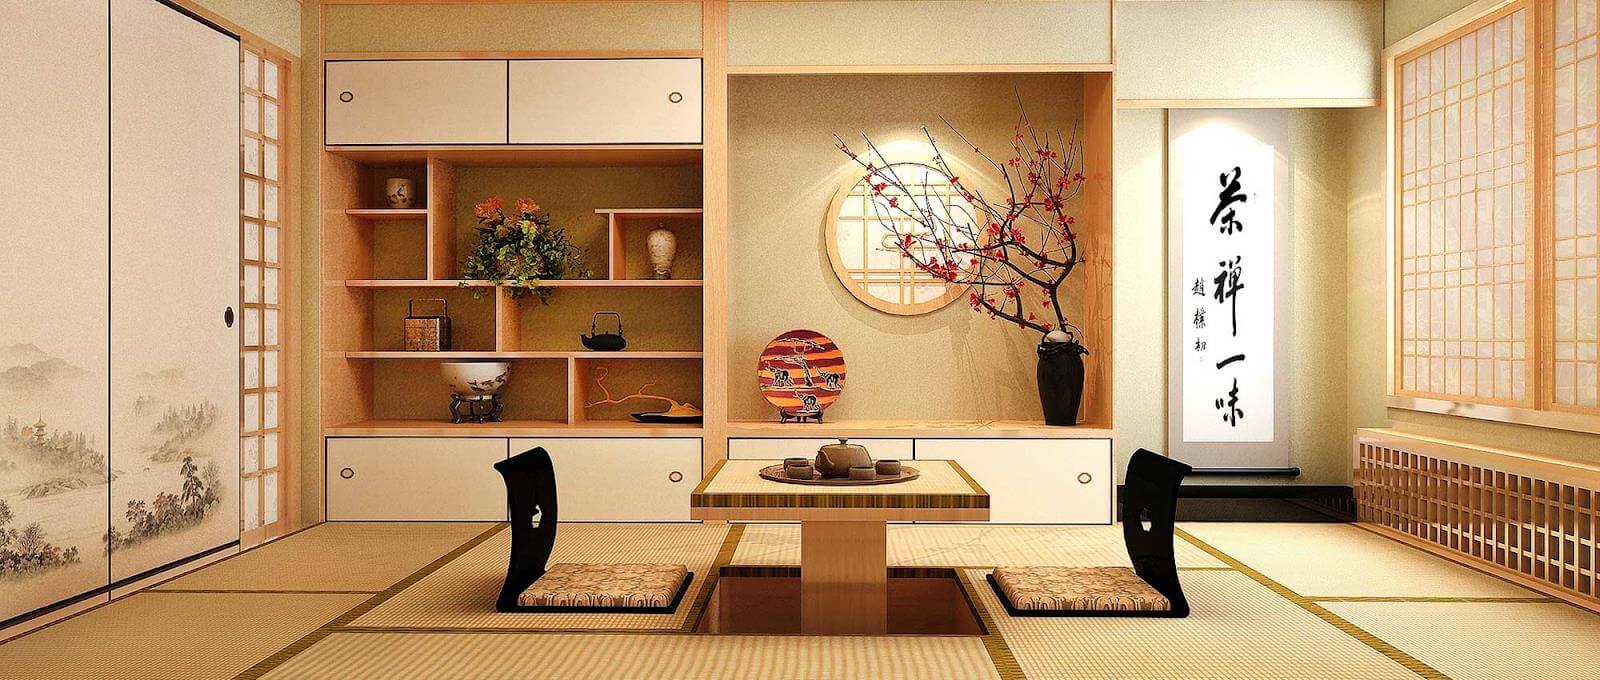 thiết kế nội thất Nhật